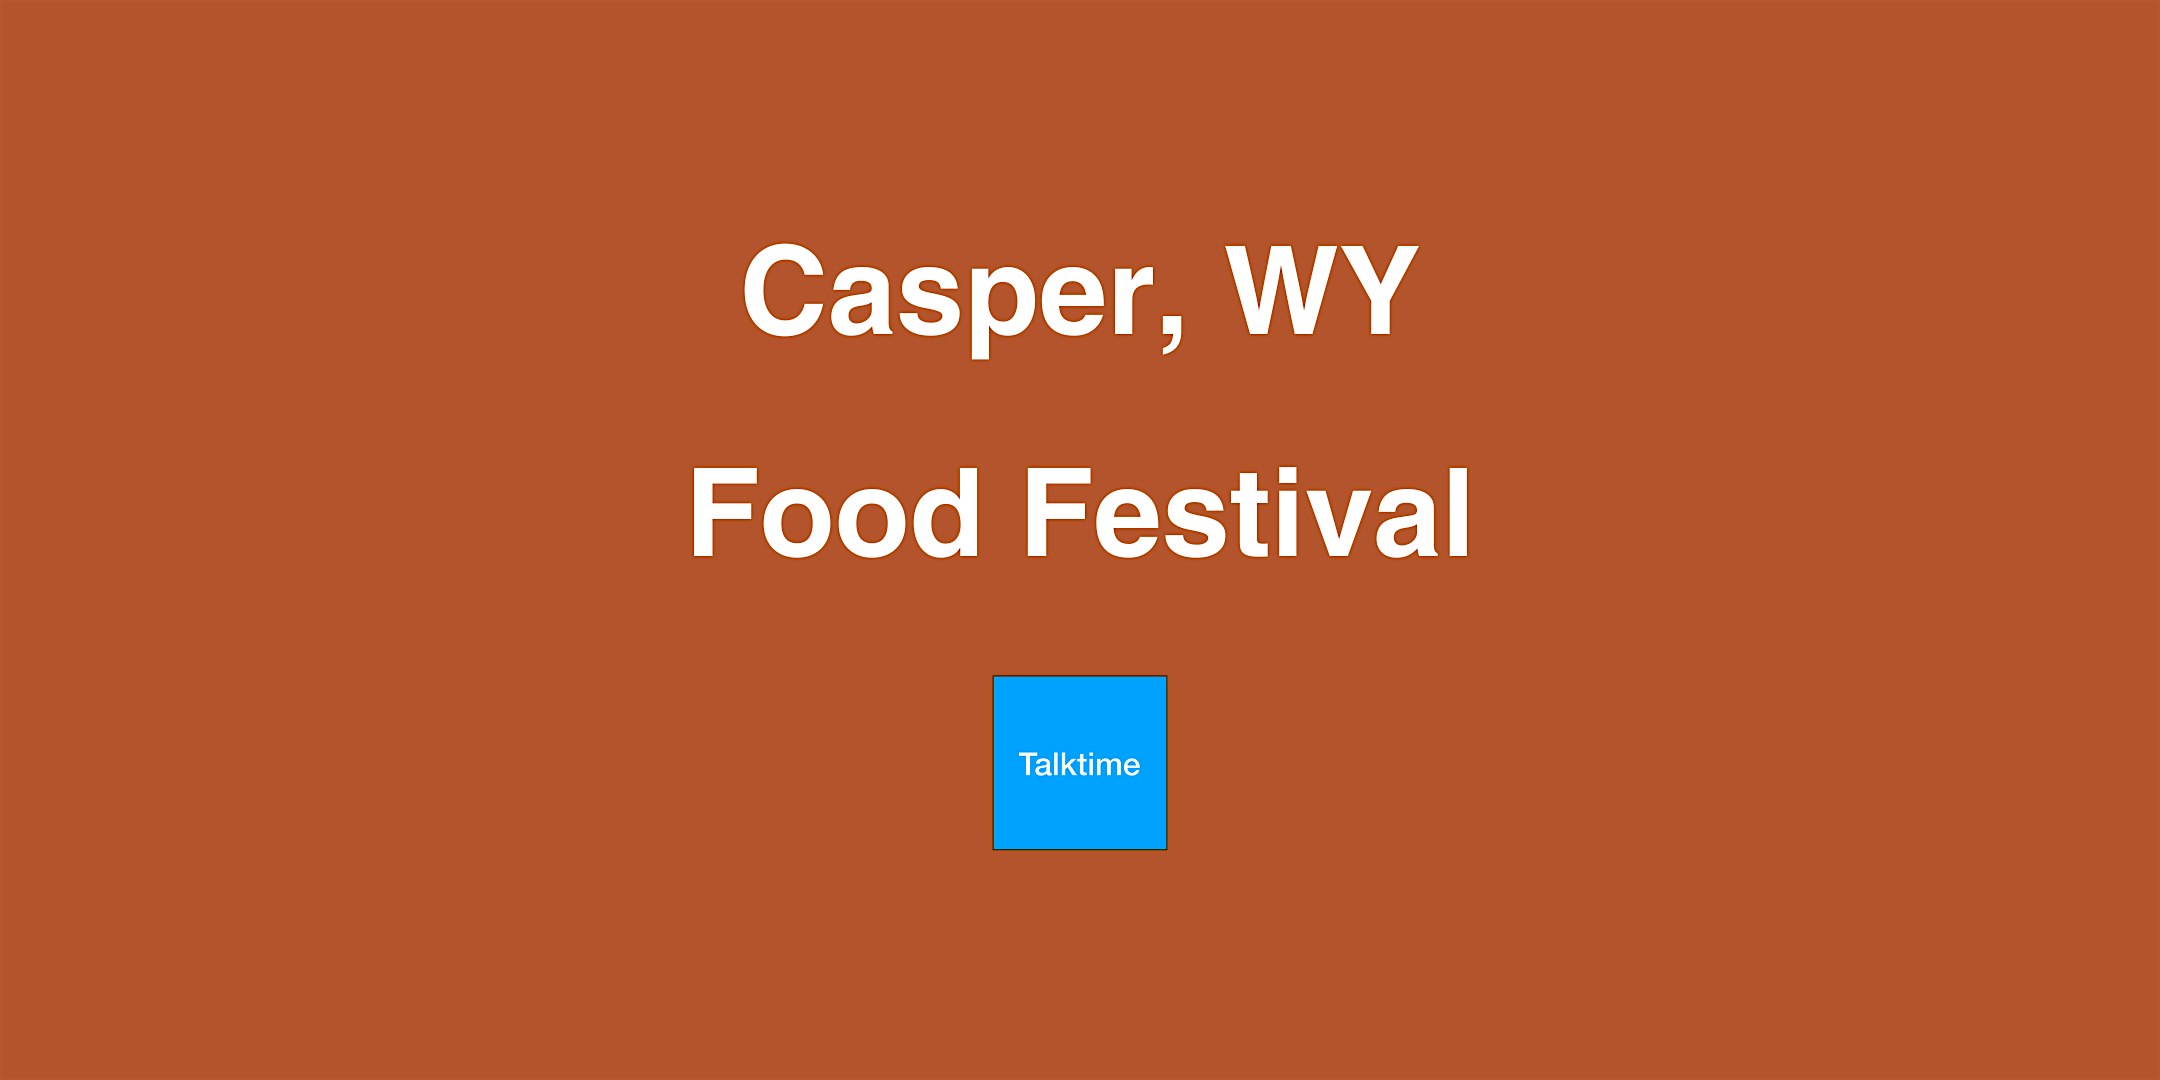 Food Festival - Casper